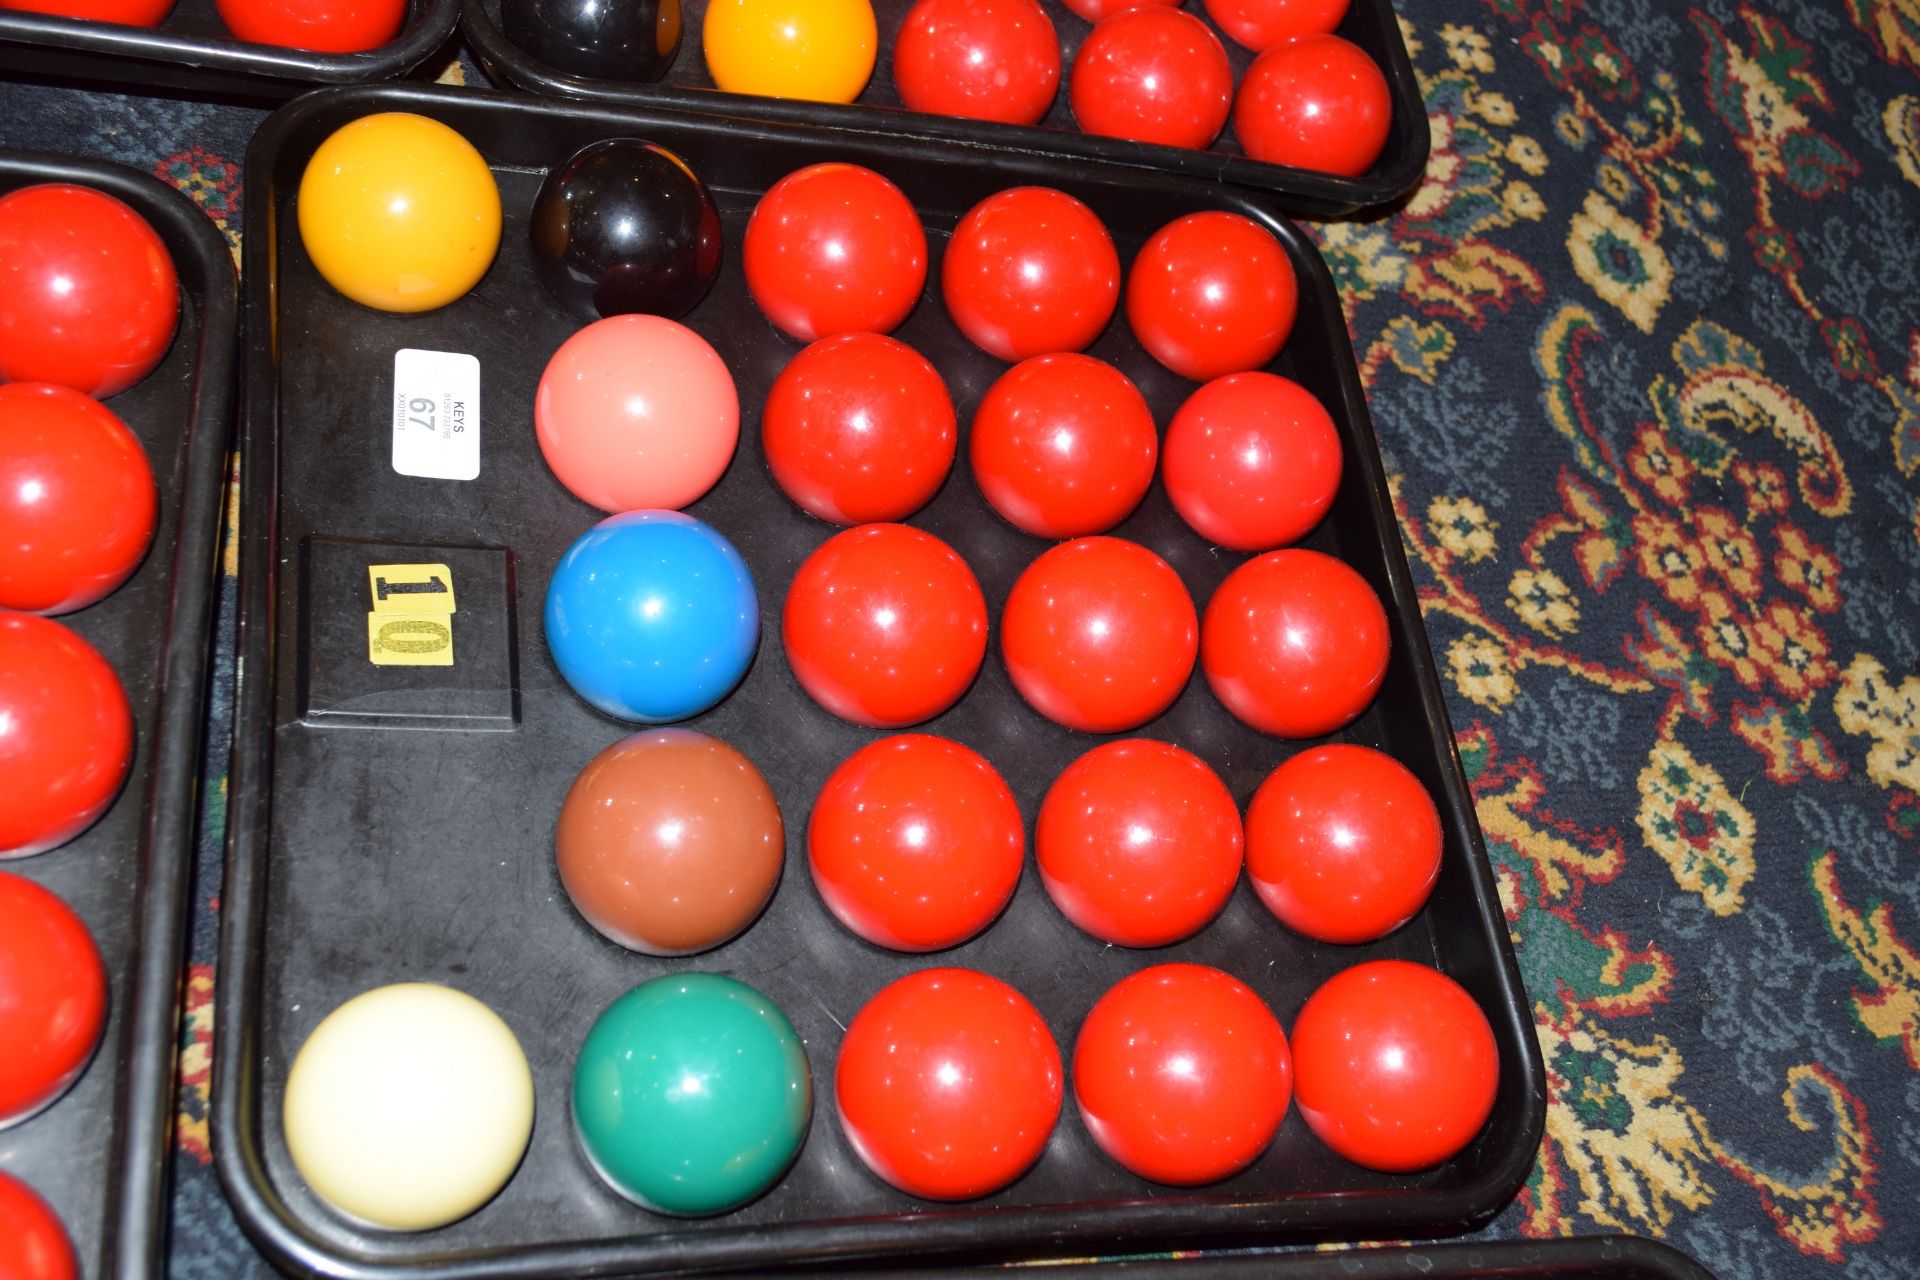 Full set of snooker balls